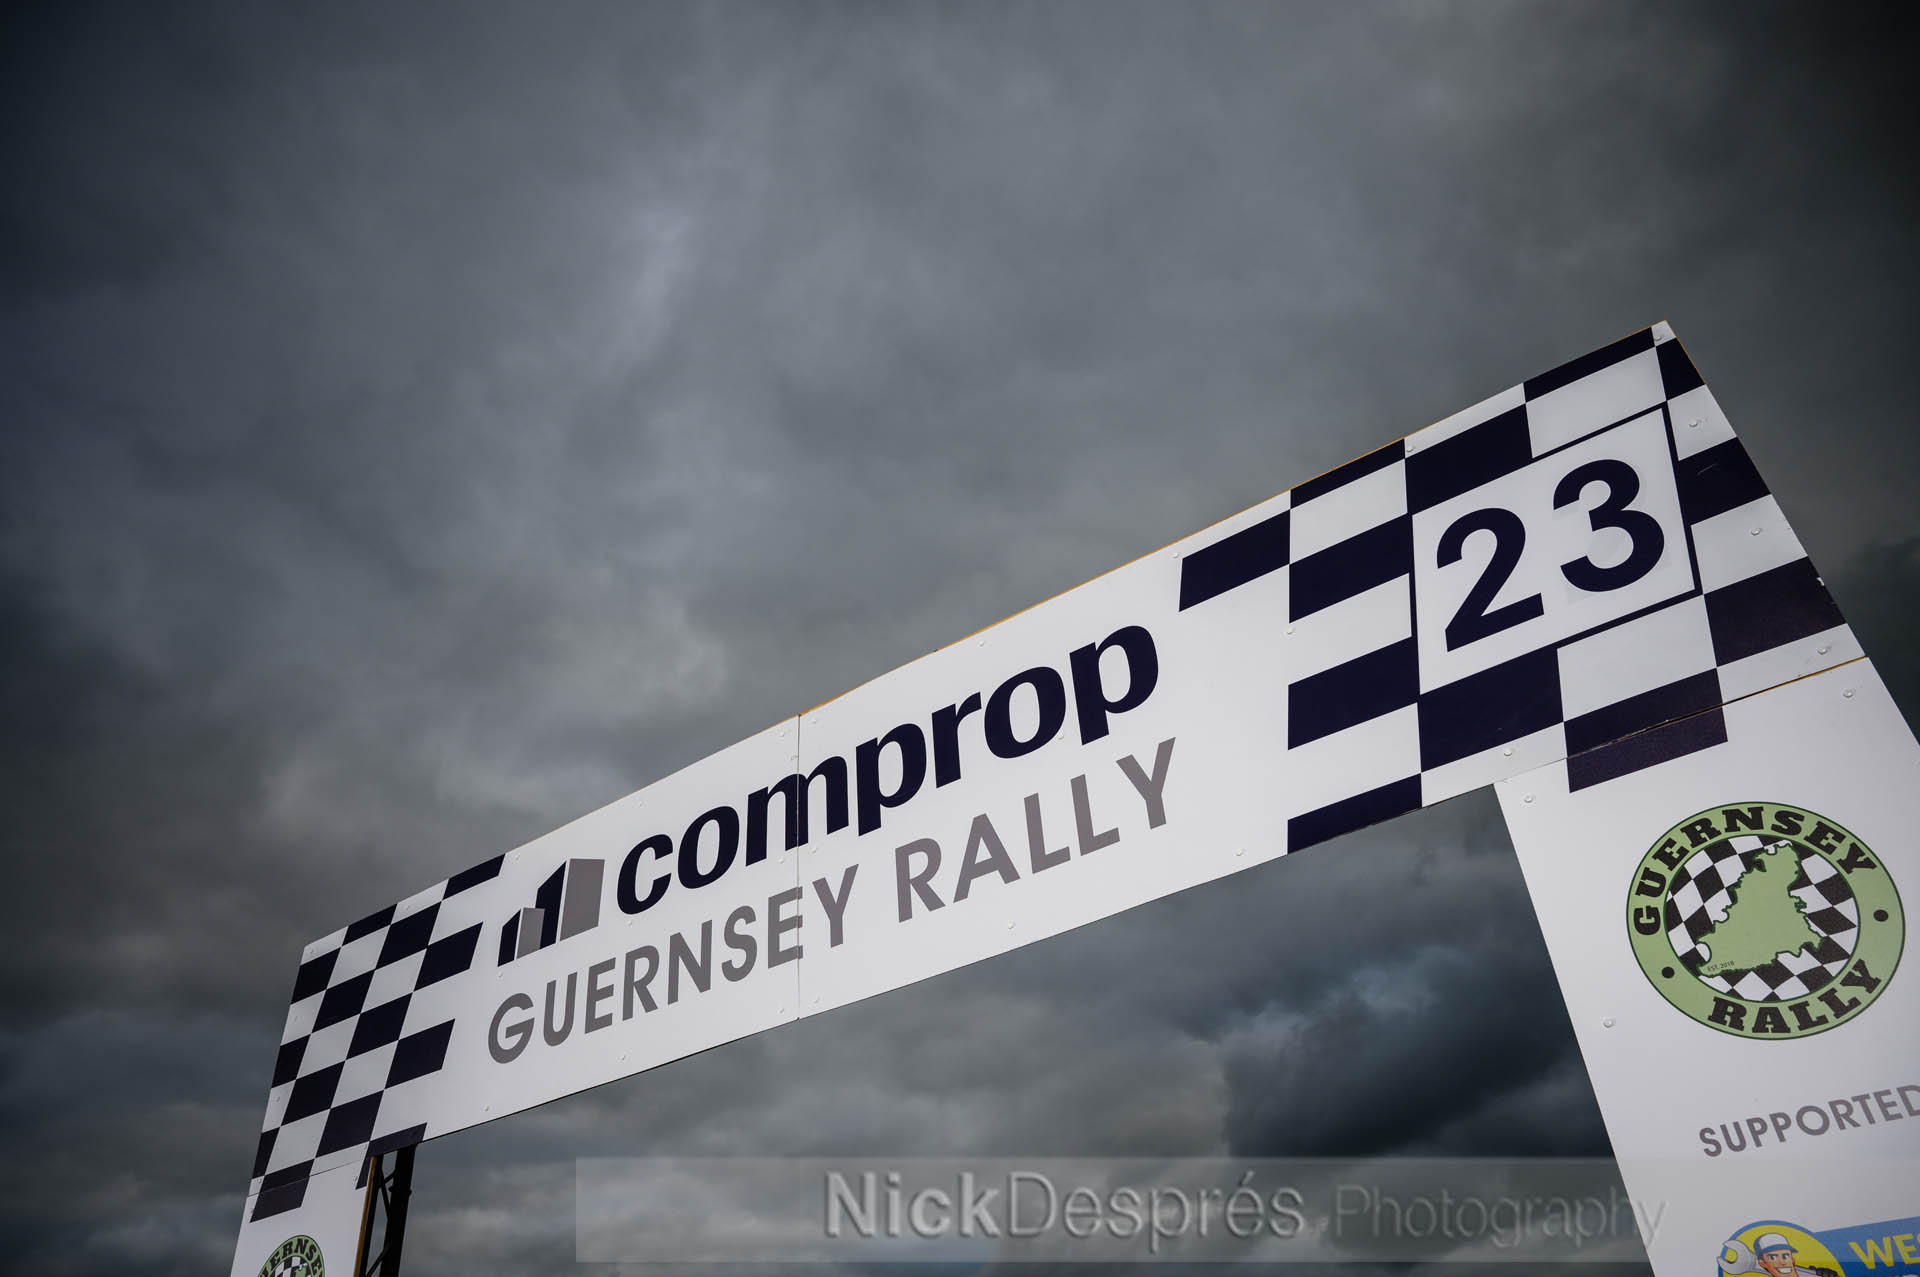 2023 Guernsey rally